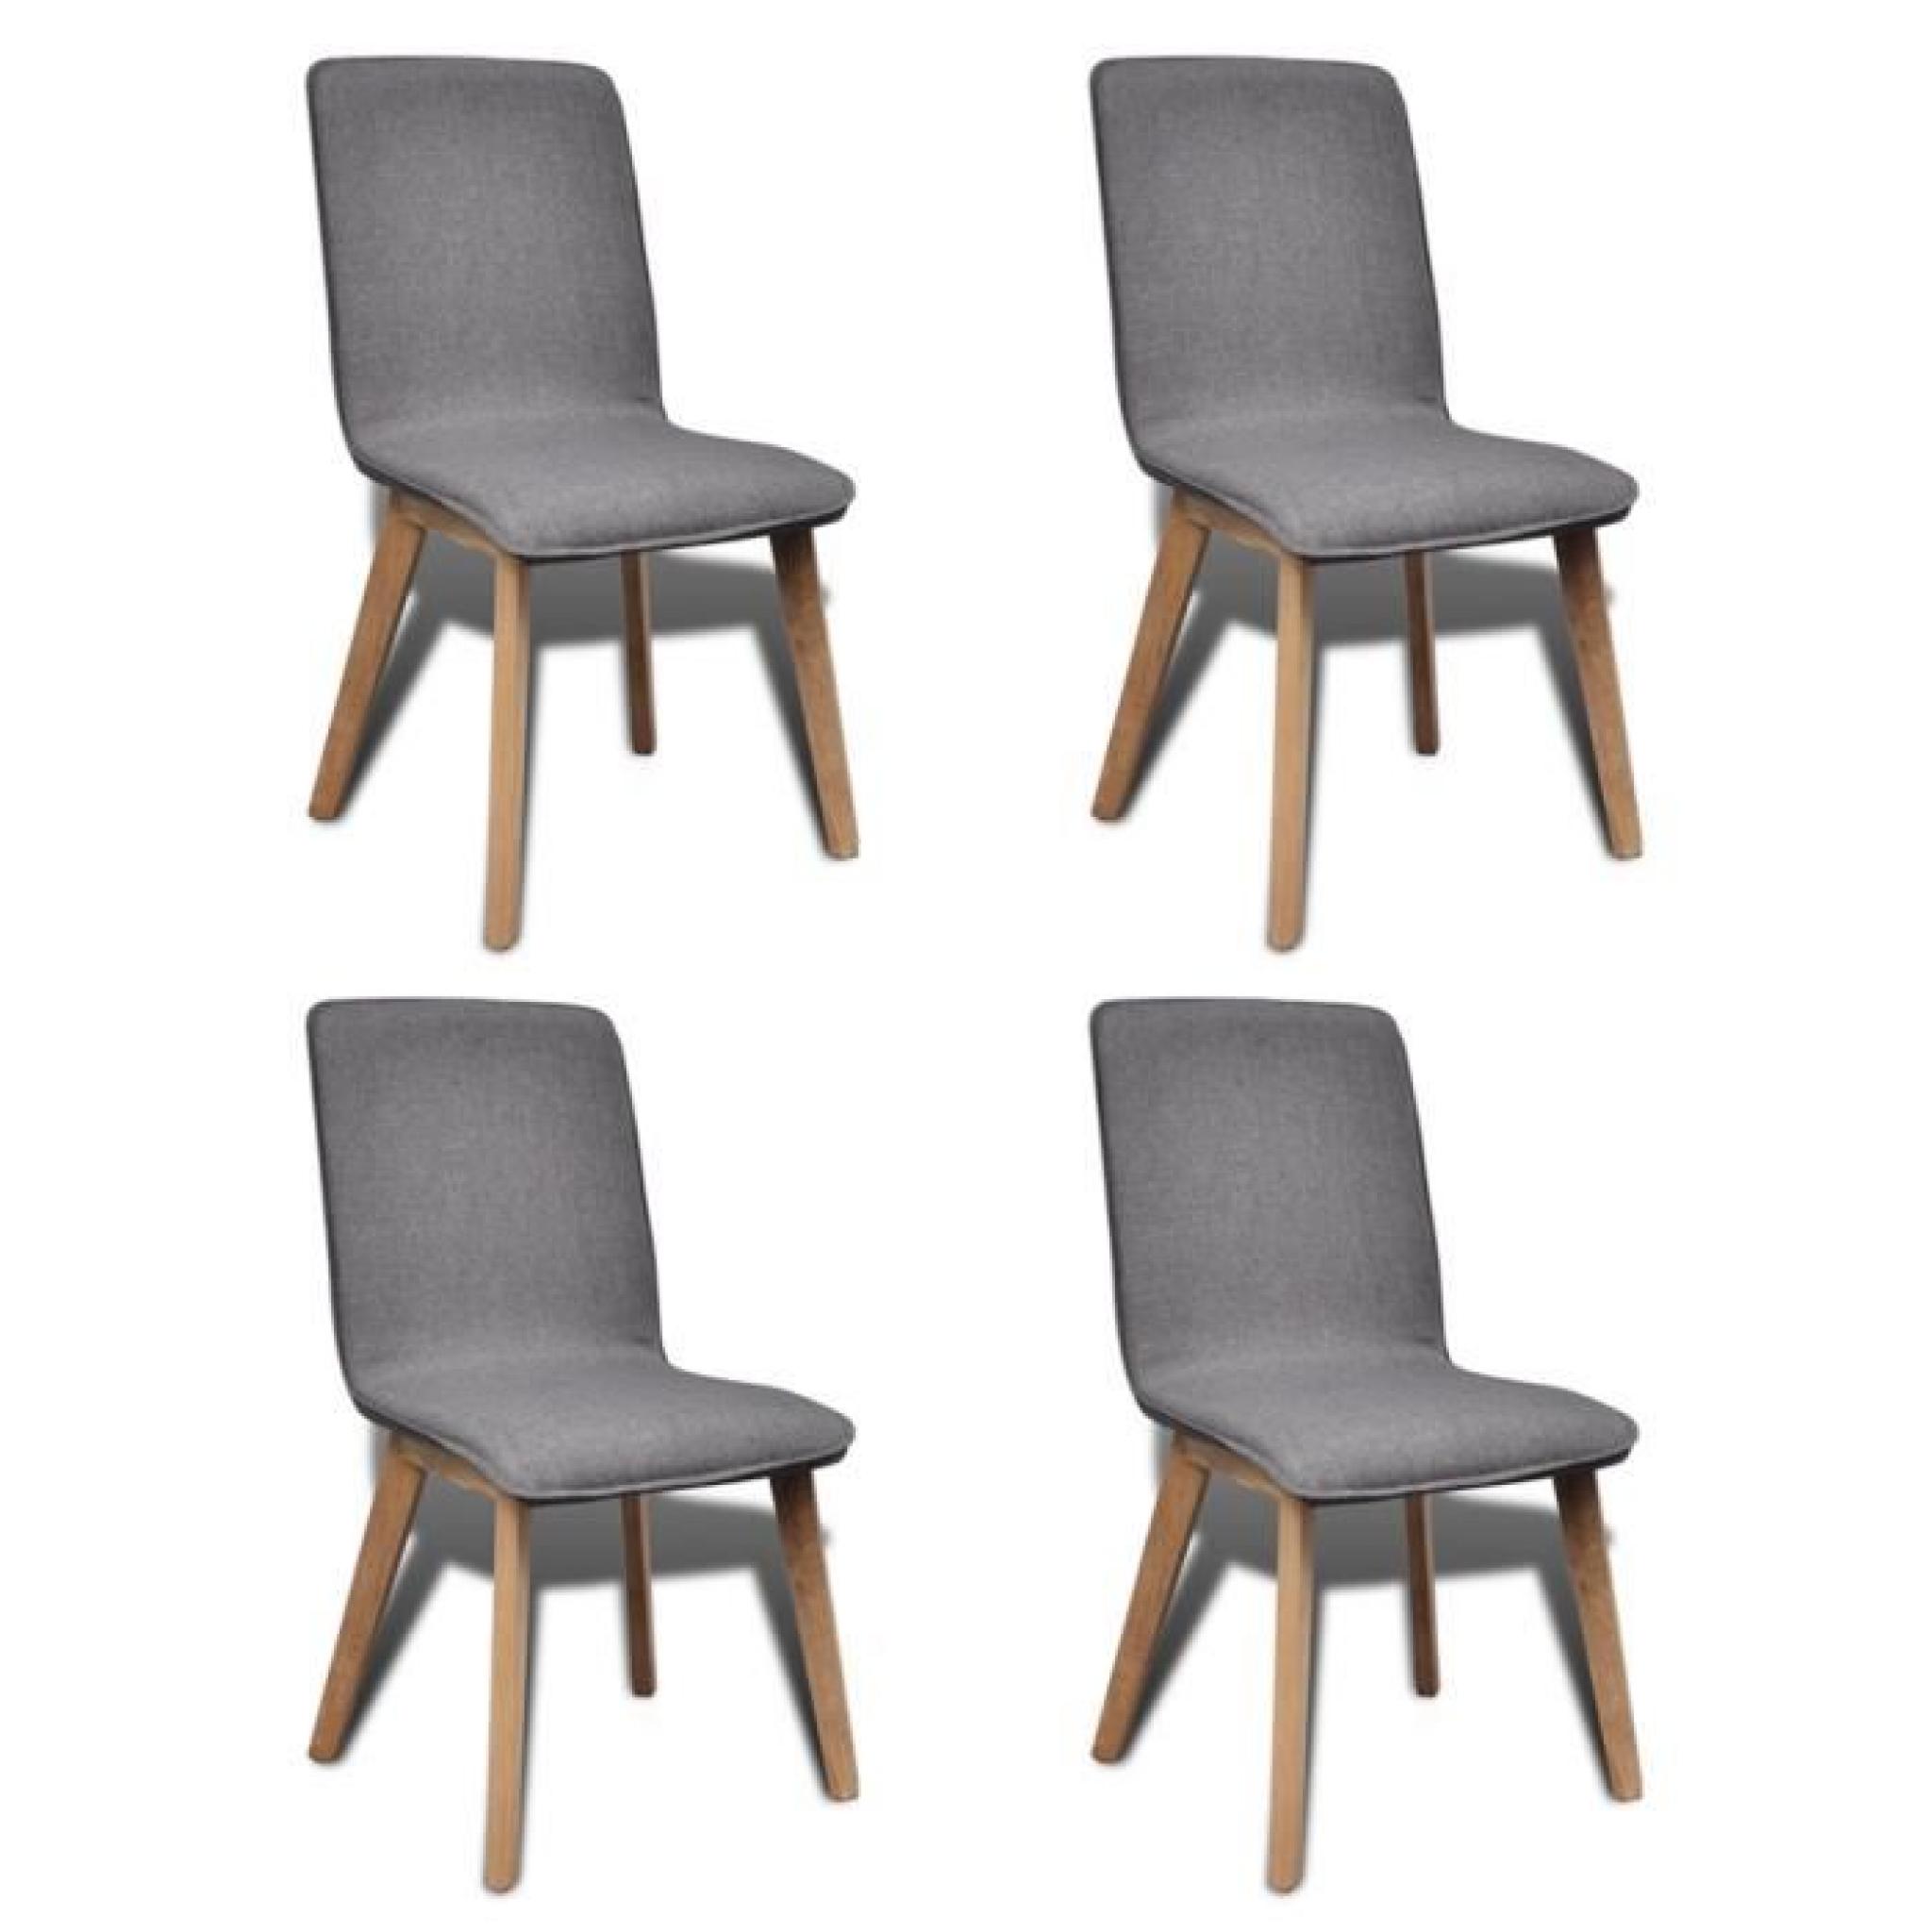 Set de 4 chaises gondole pour intérieur en chêne en tissu gris clair